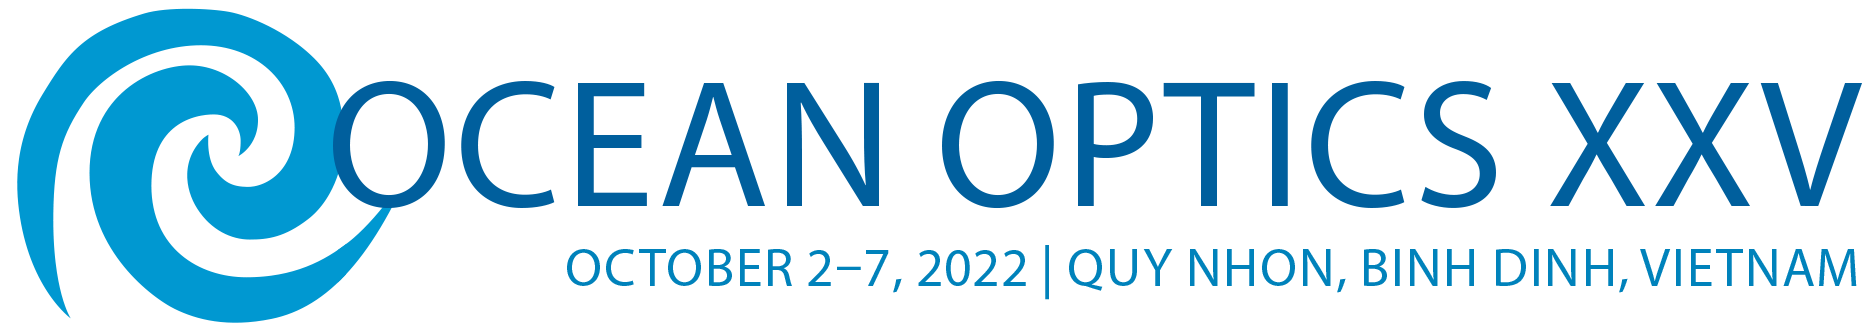 Ocean Optics Conference 2022